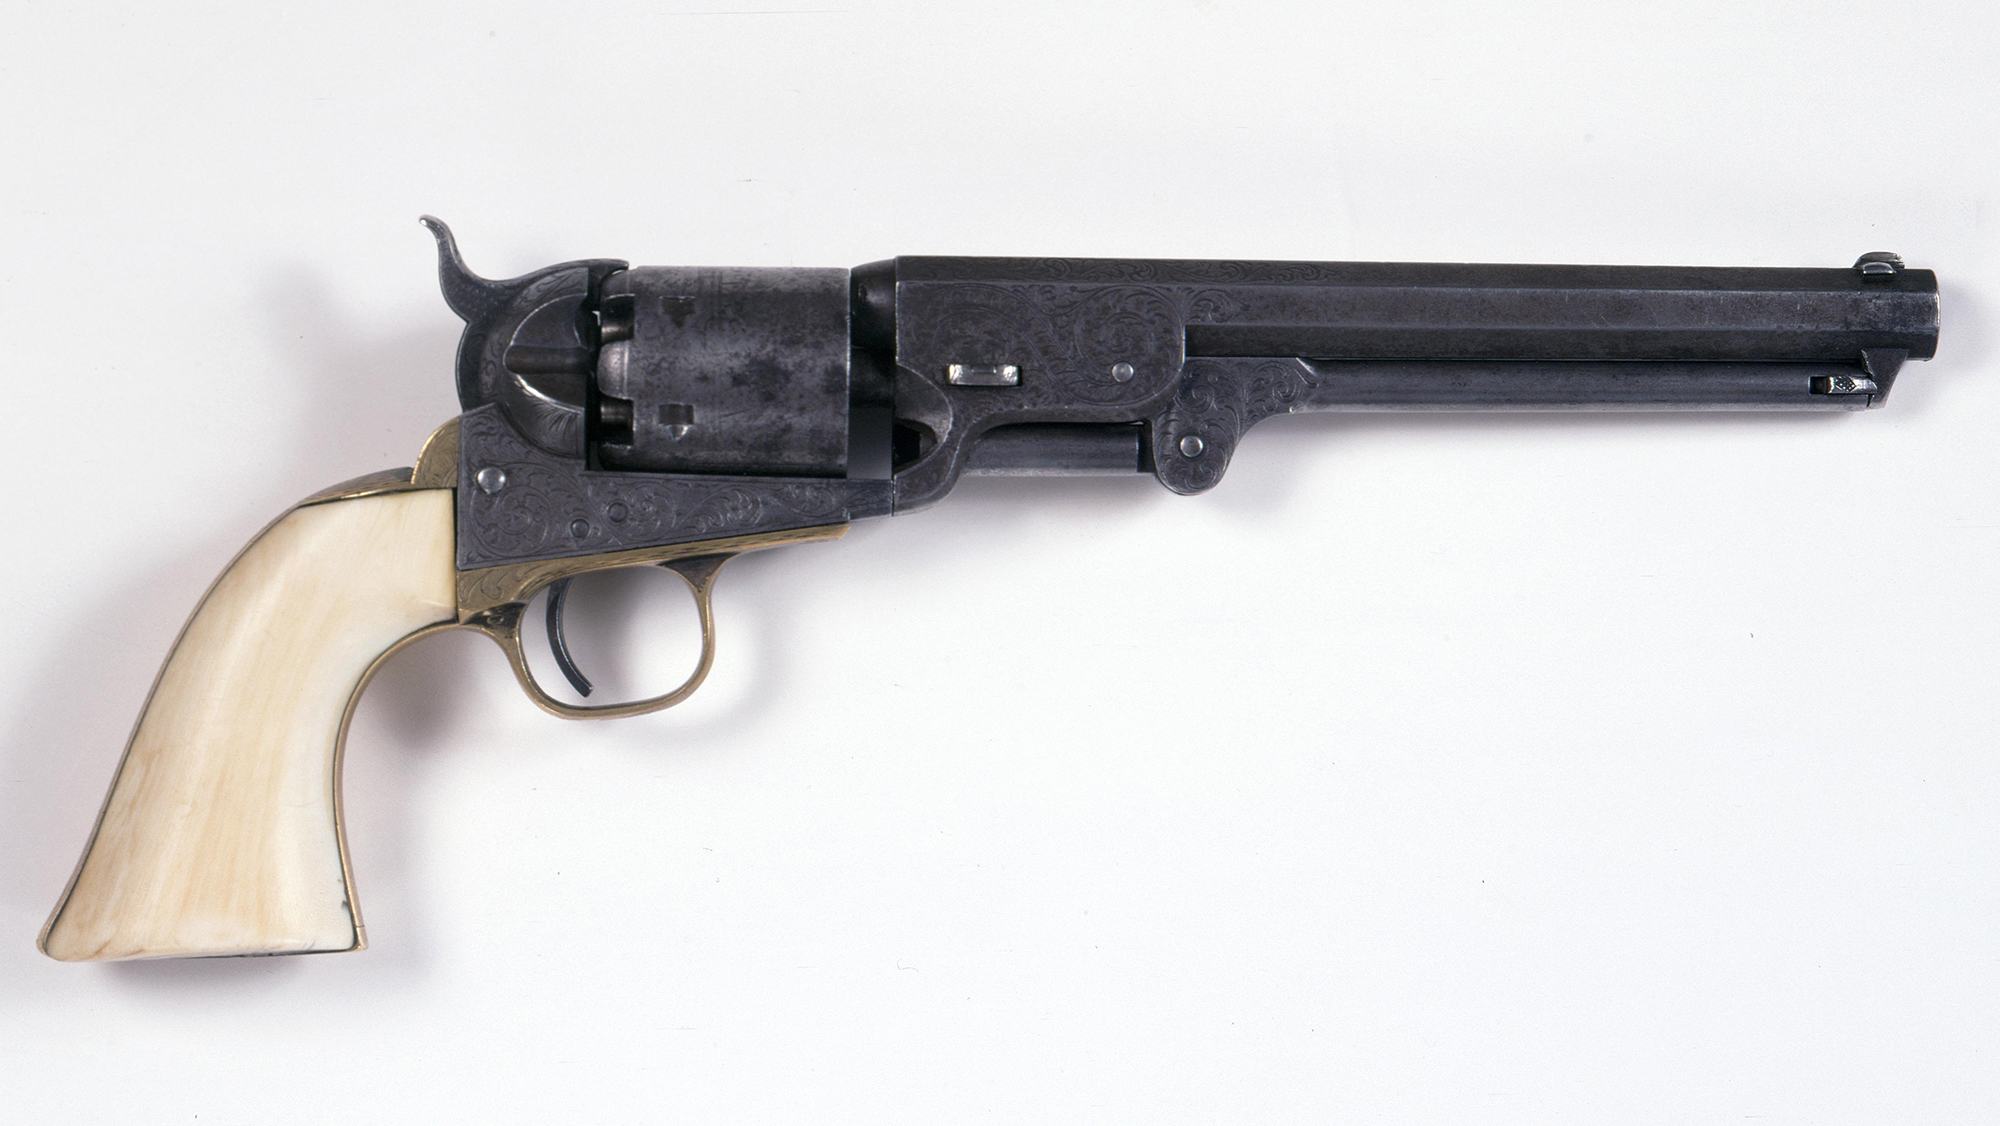 Wild Bill Hickok’s Colt Model 1851 Navy Revolver